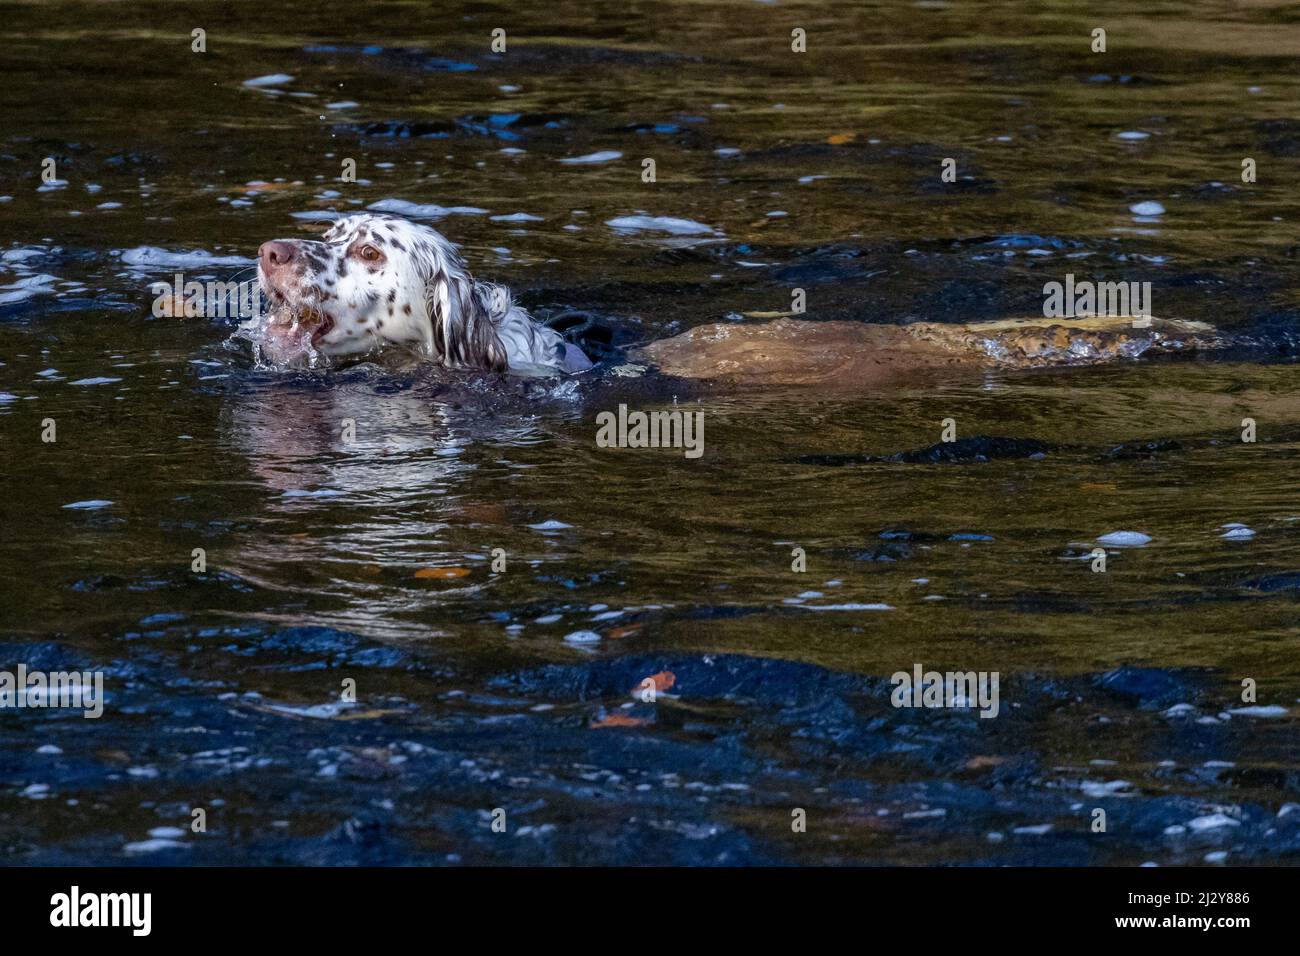 Der Hund schwimmt in einem Fluss und holt einen Ball mit Wasser im Mund, während er den Ball holt. VEREINIGTES KÖNIGREICH Stockfoto